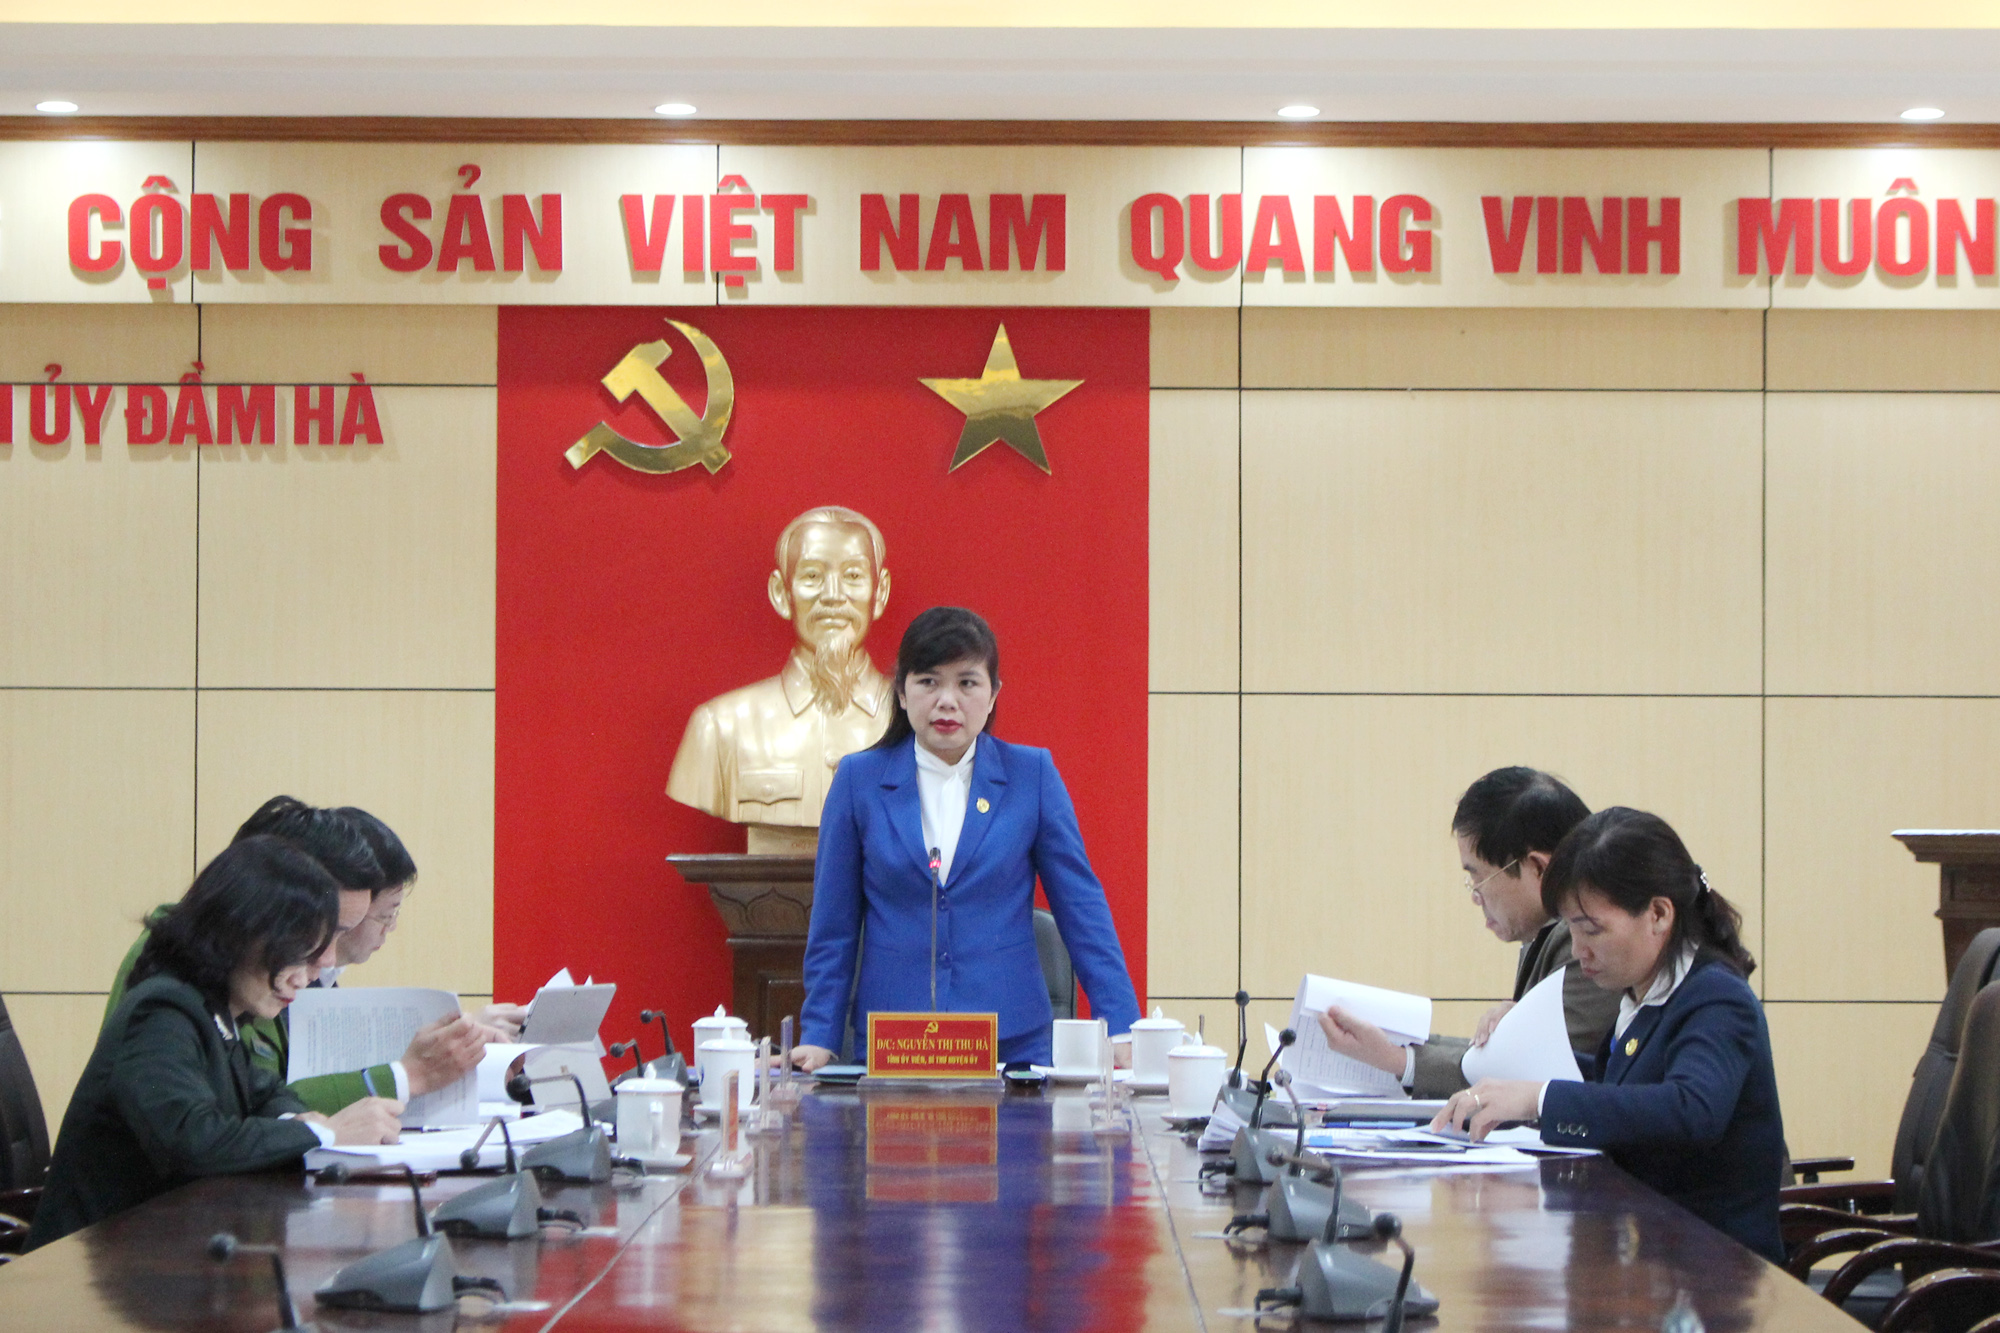 Đồng chí Nguyễn Thị Thu Hà, Bí thư Huyện ủy, chủ trì họp tiểu ban nhân sự phục vụ Đại hội Đảng bộ huyện nhiệm kỳ 2020-2025.